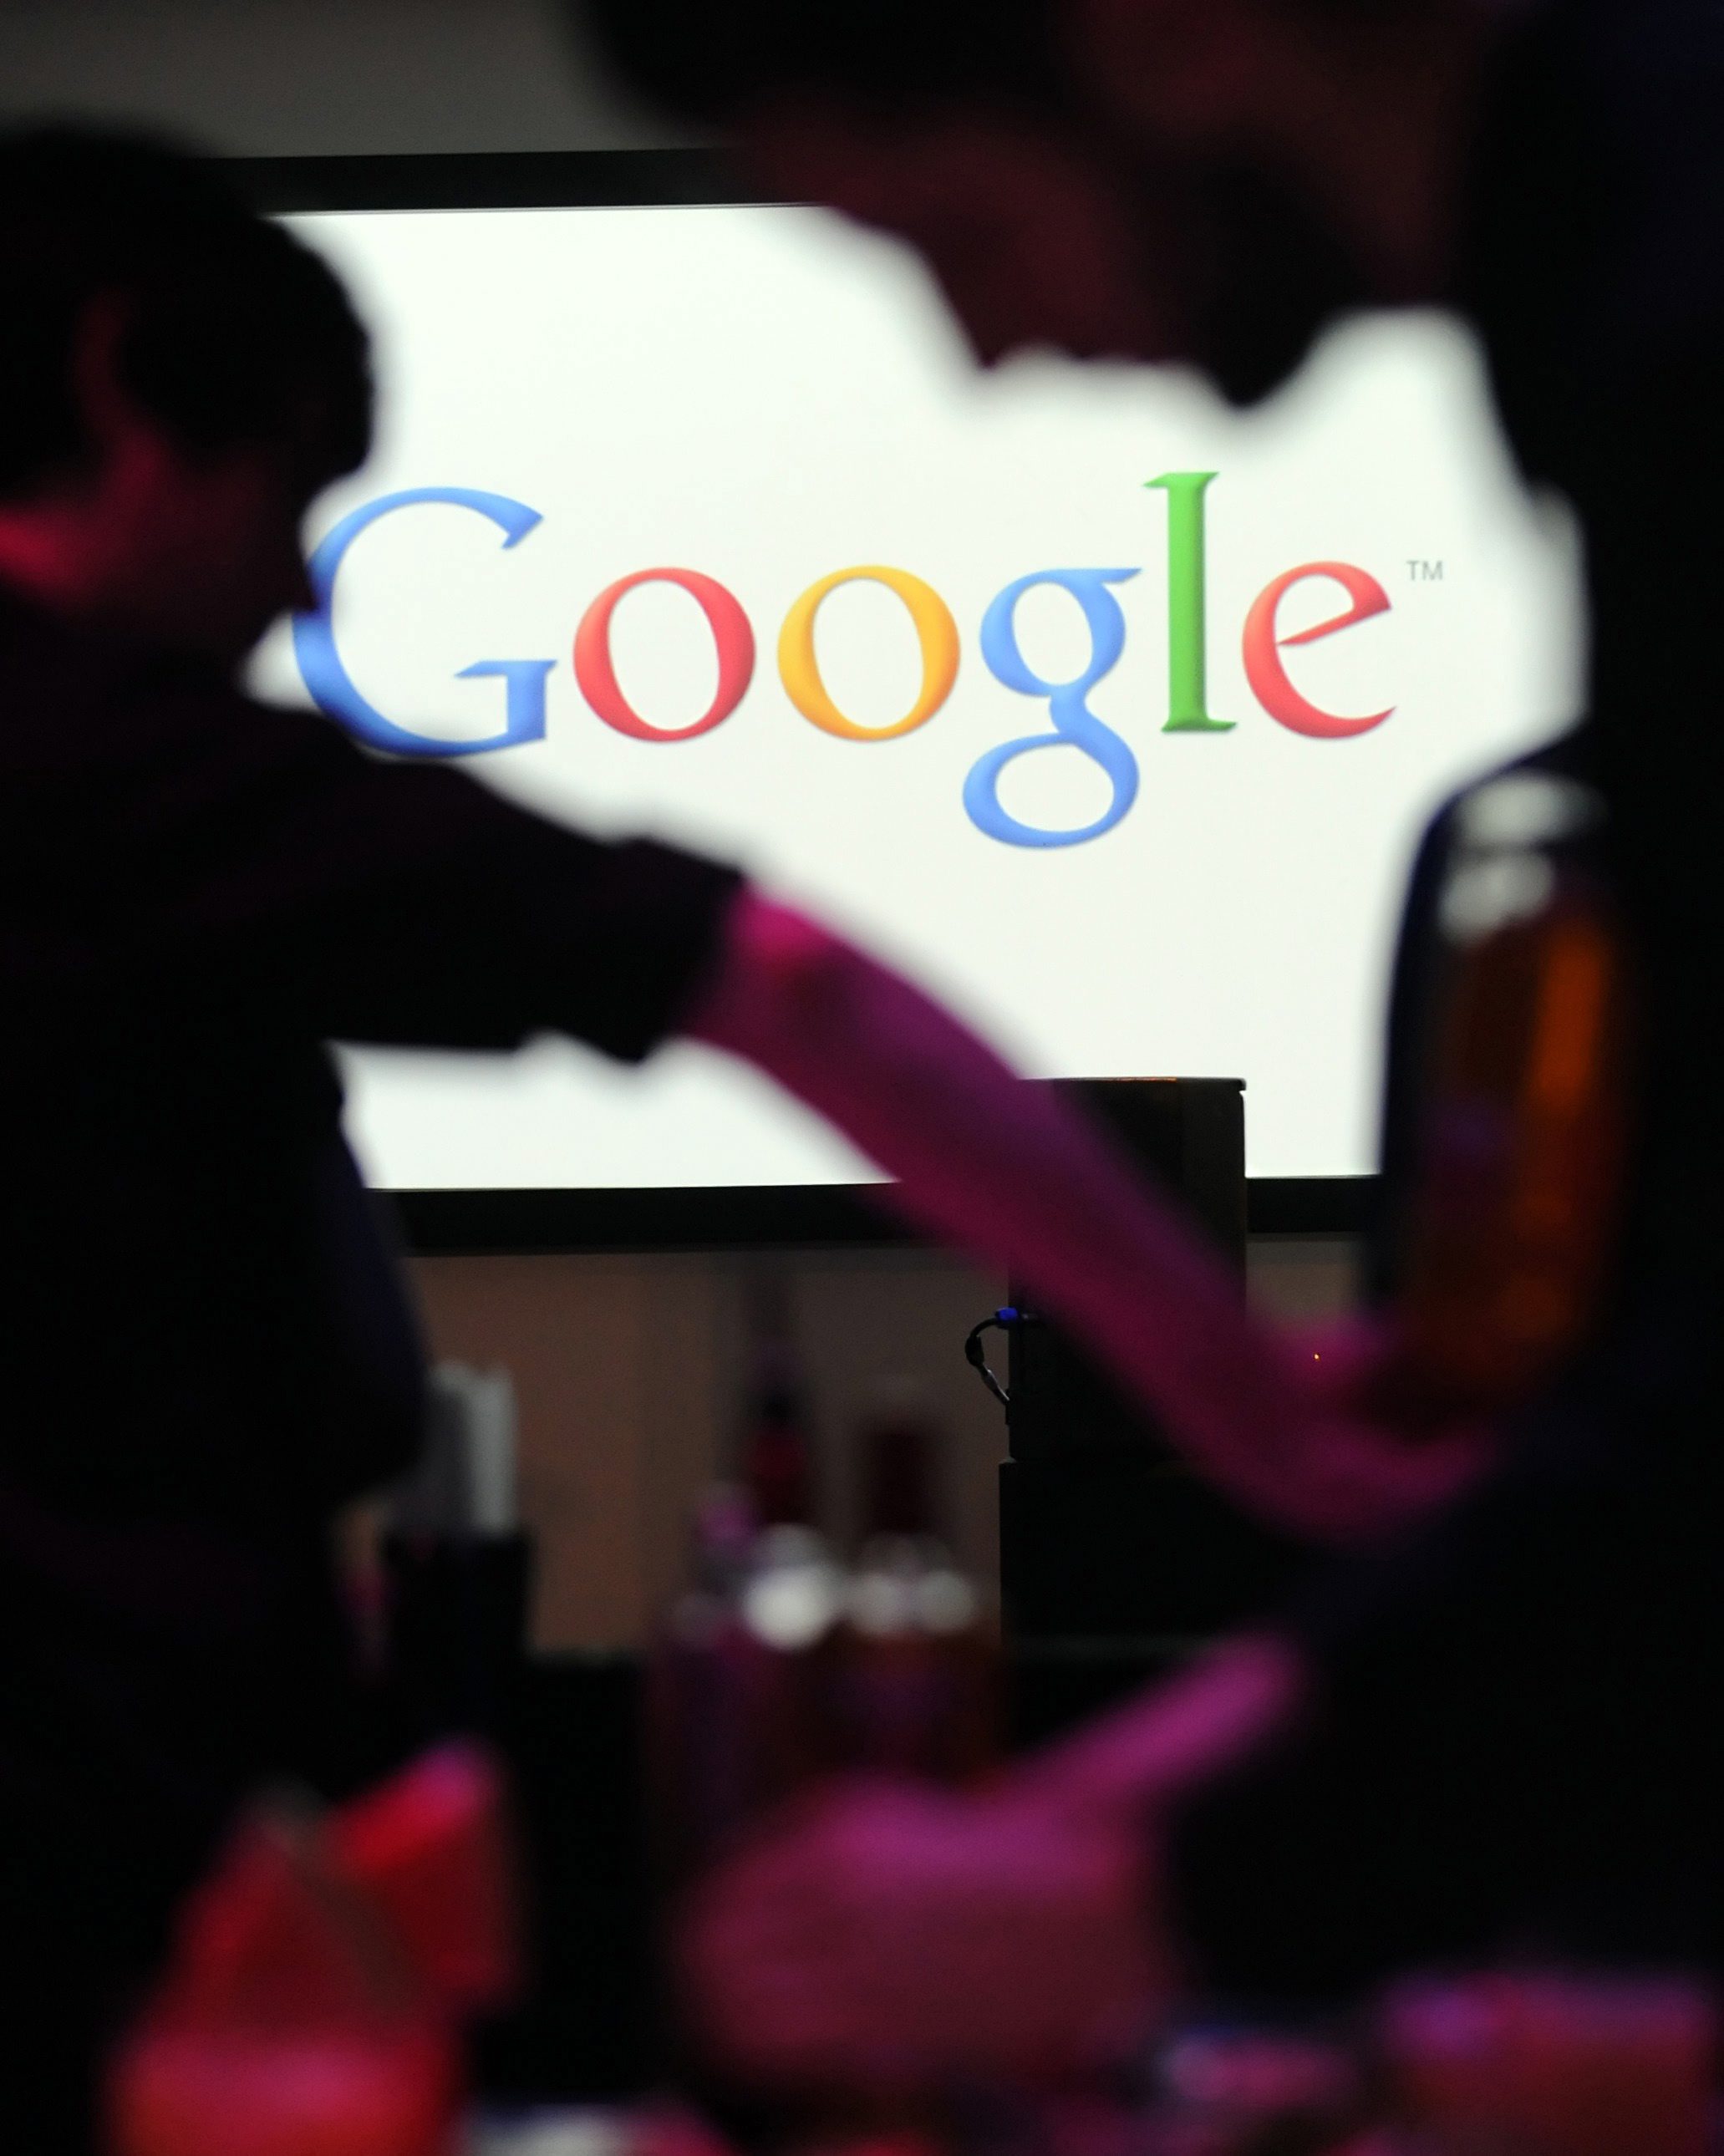 През март миналата година Google даде началото на нова политика за конфиденциалност